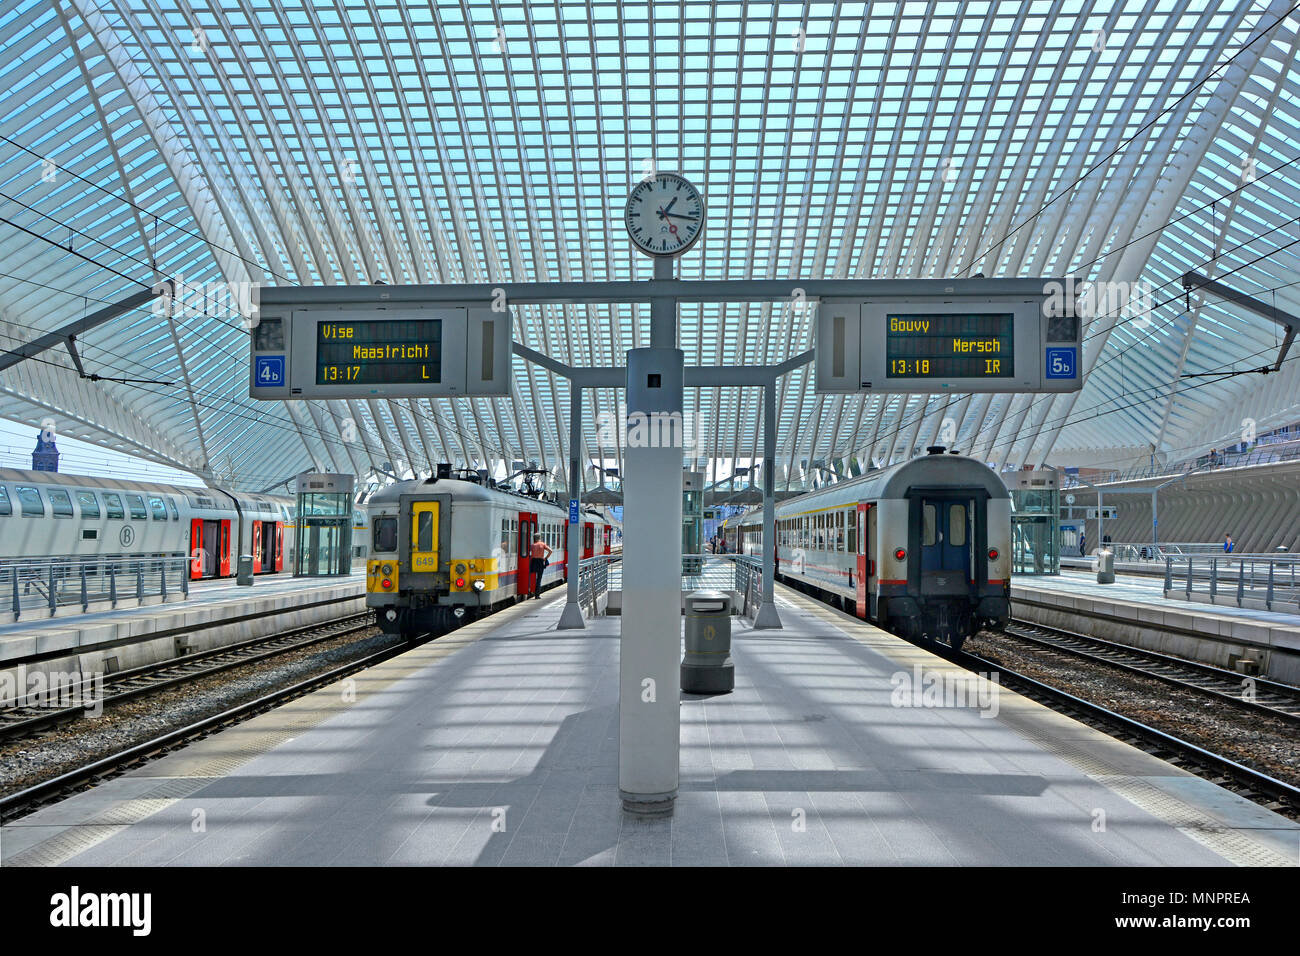 Symmetrische Architektur des modernen öffentlichen Verkehr Lüttich Belgien EU-Bahnhof Bahnsteig Clock & große Glasdach für Züge Stockfoto